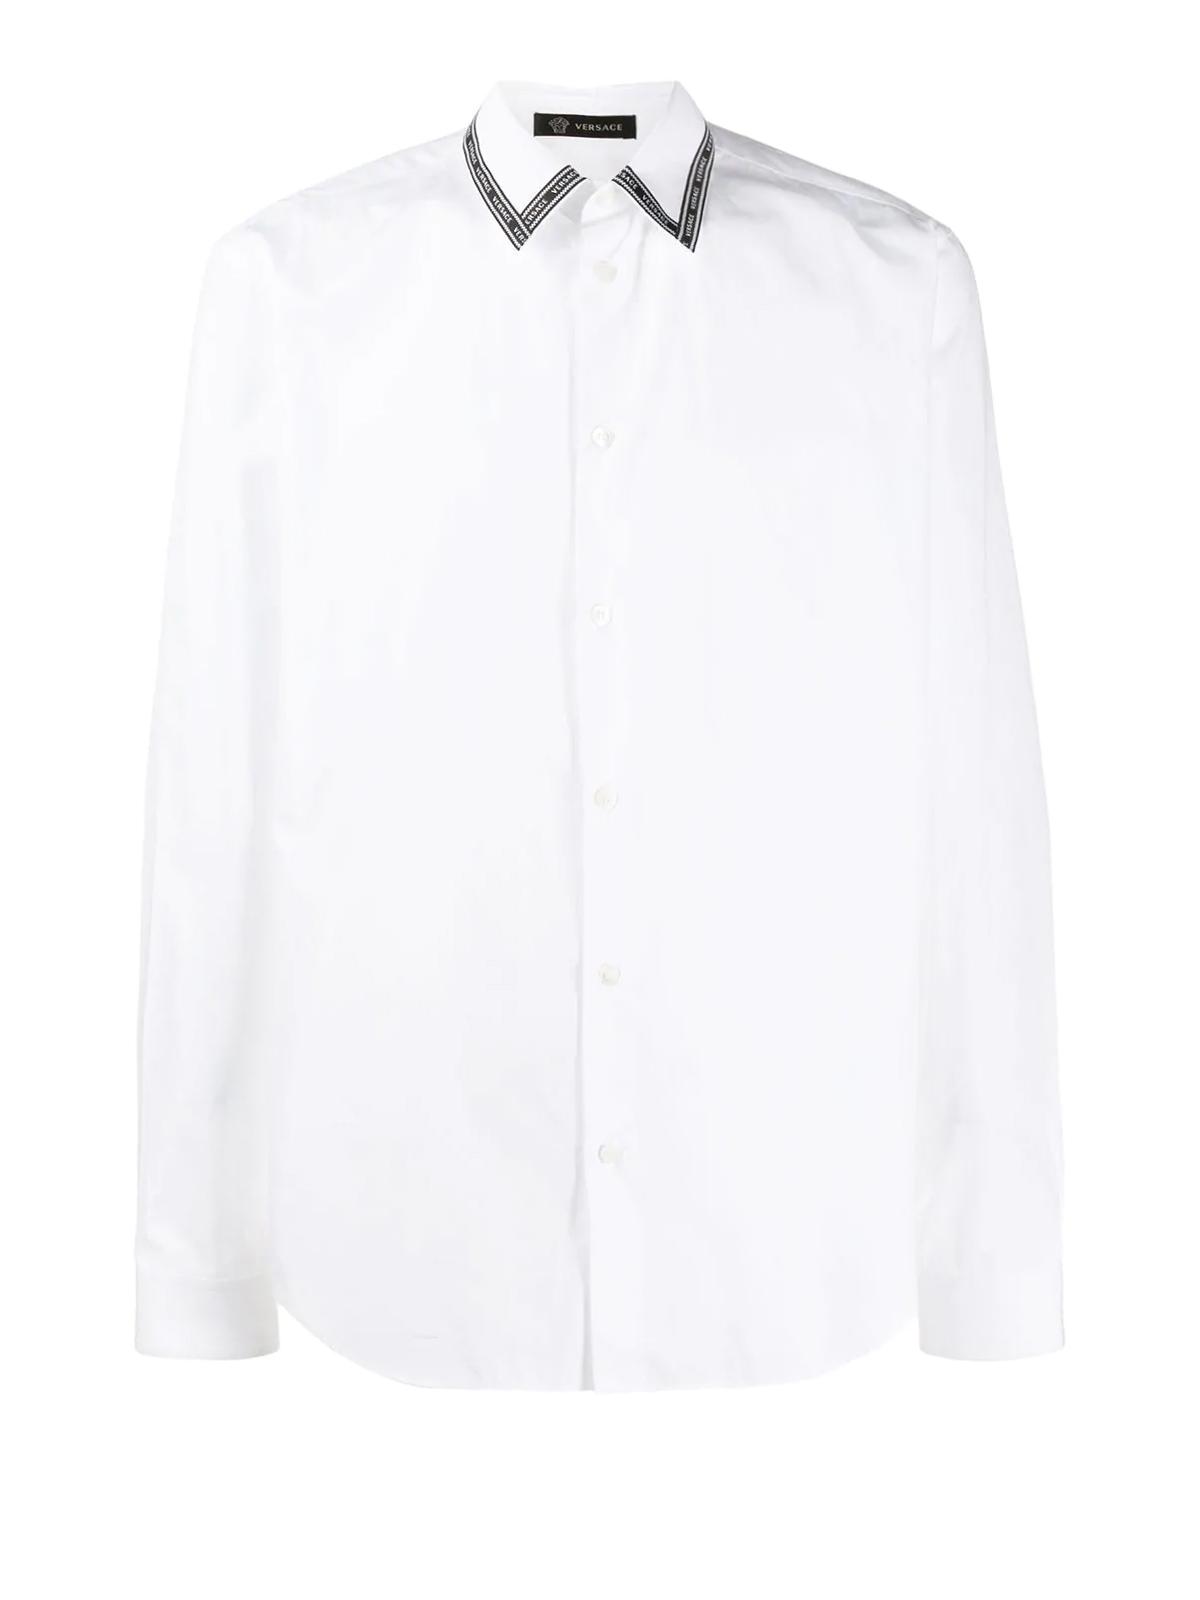 Versace Logo-tape Collar Shirt in White for Men - Lyst